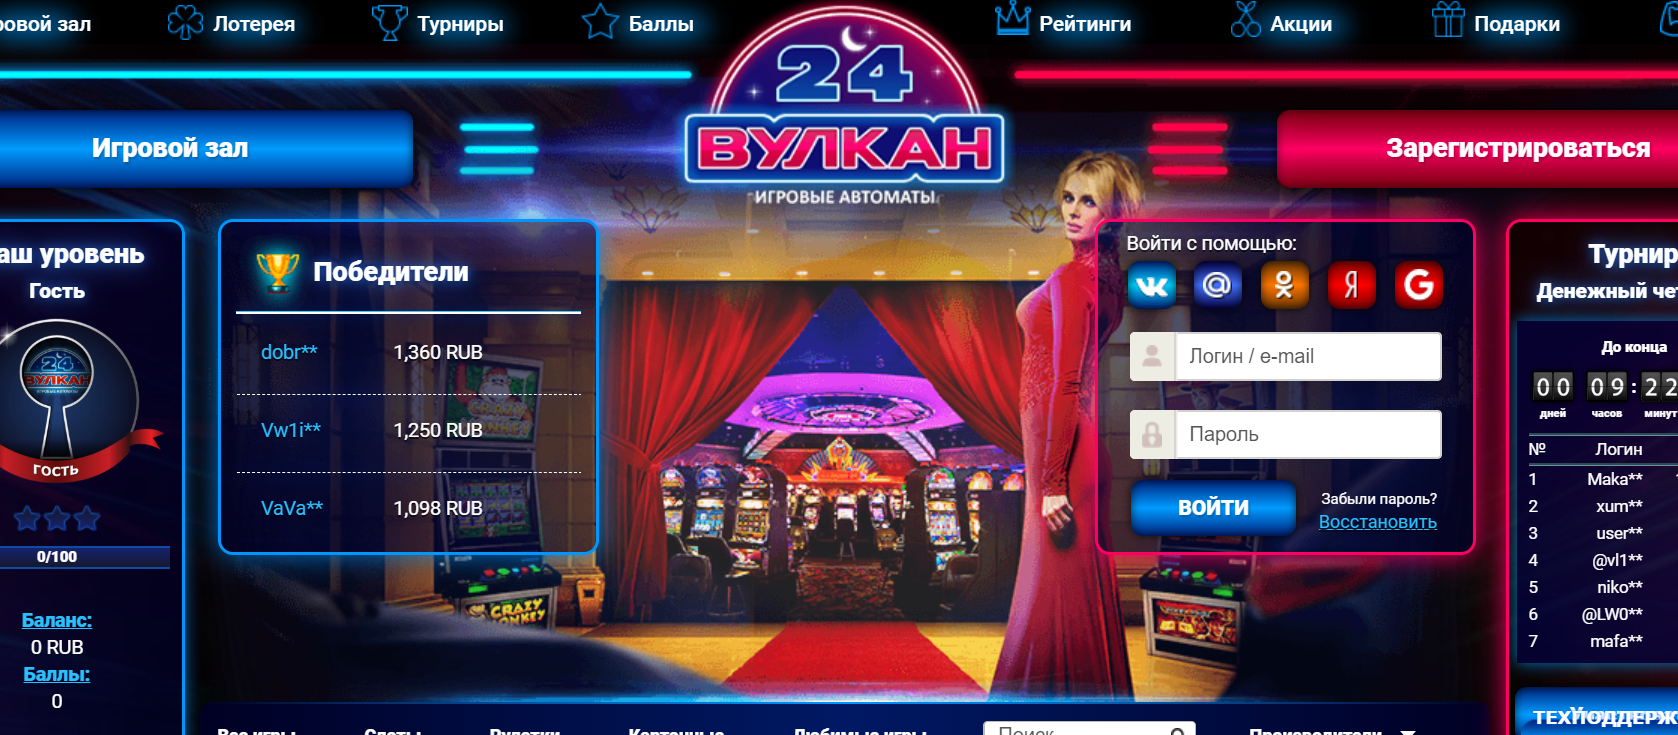 Онлайн-казино Вулкан 24 как феномен массовой культуры: влияние и популярность